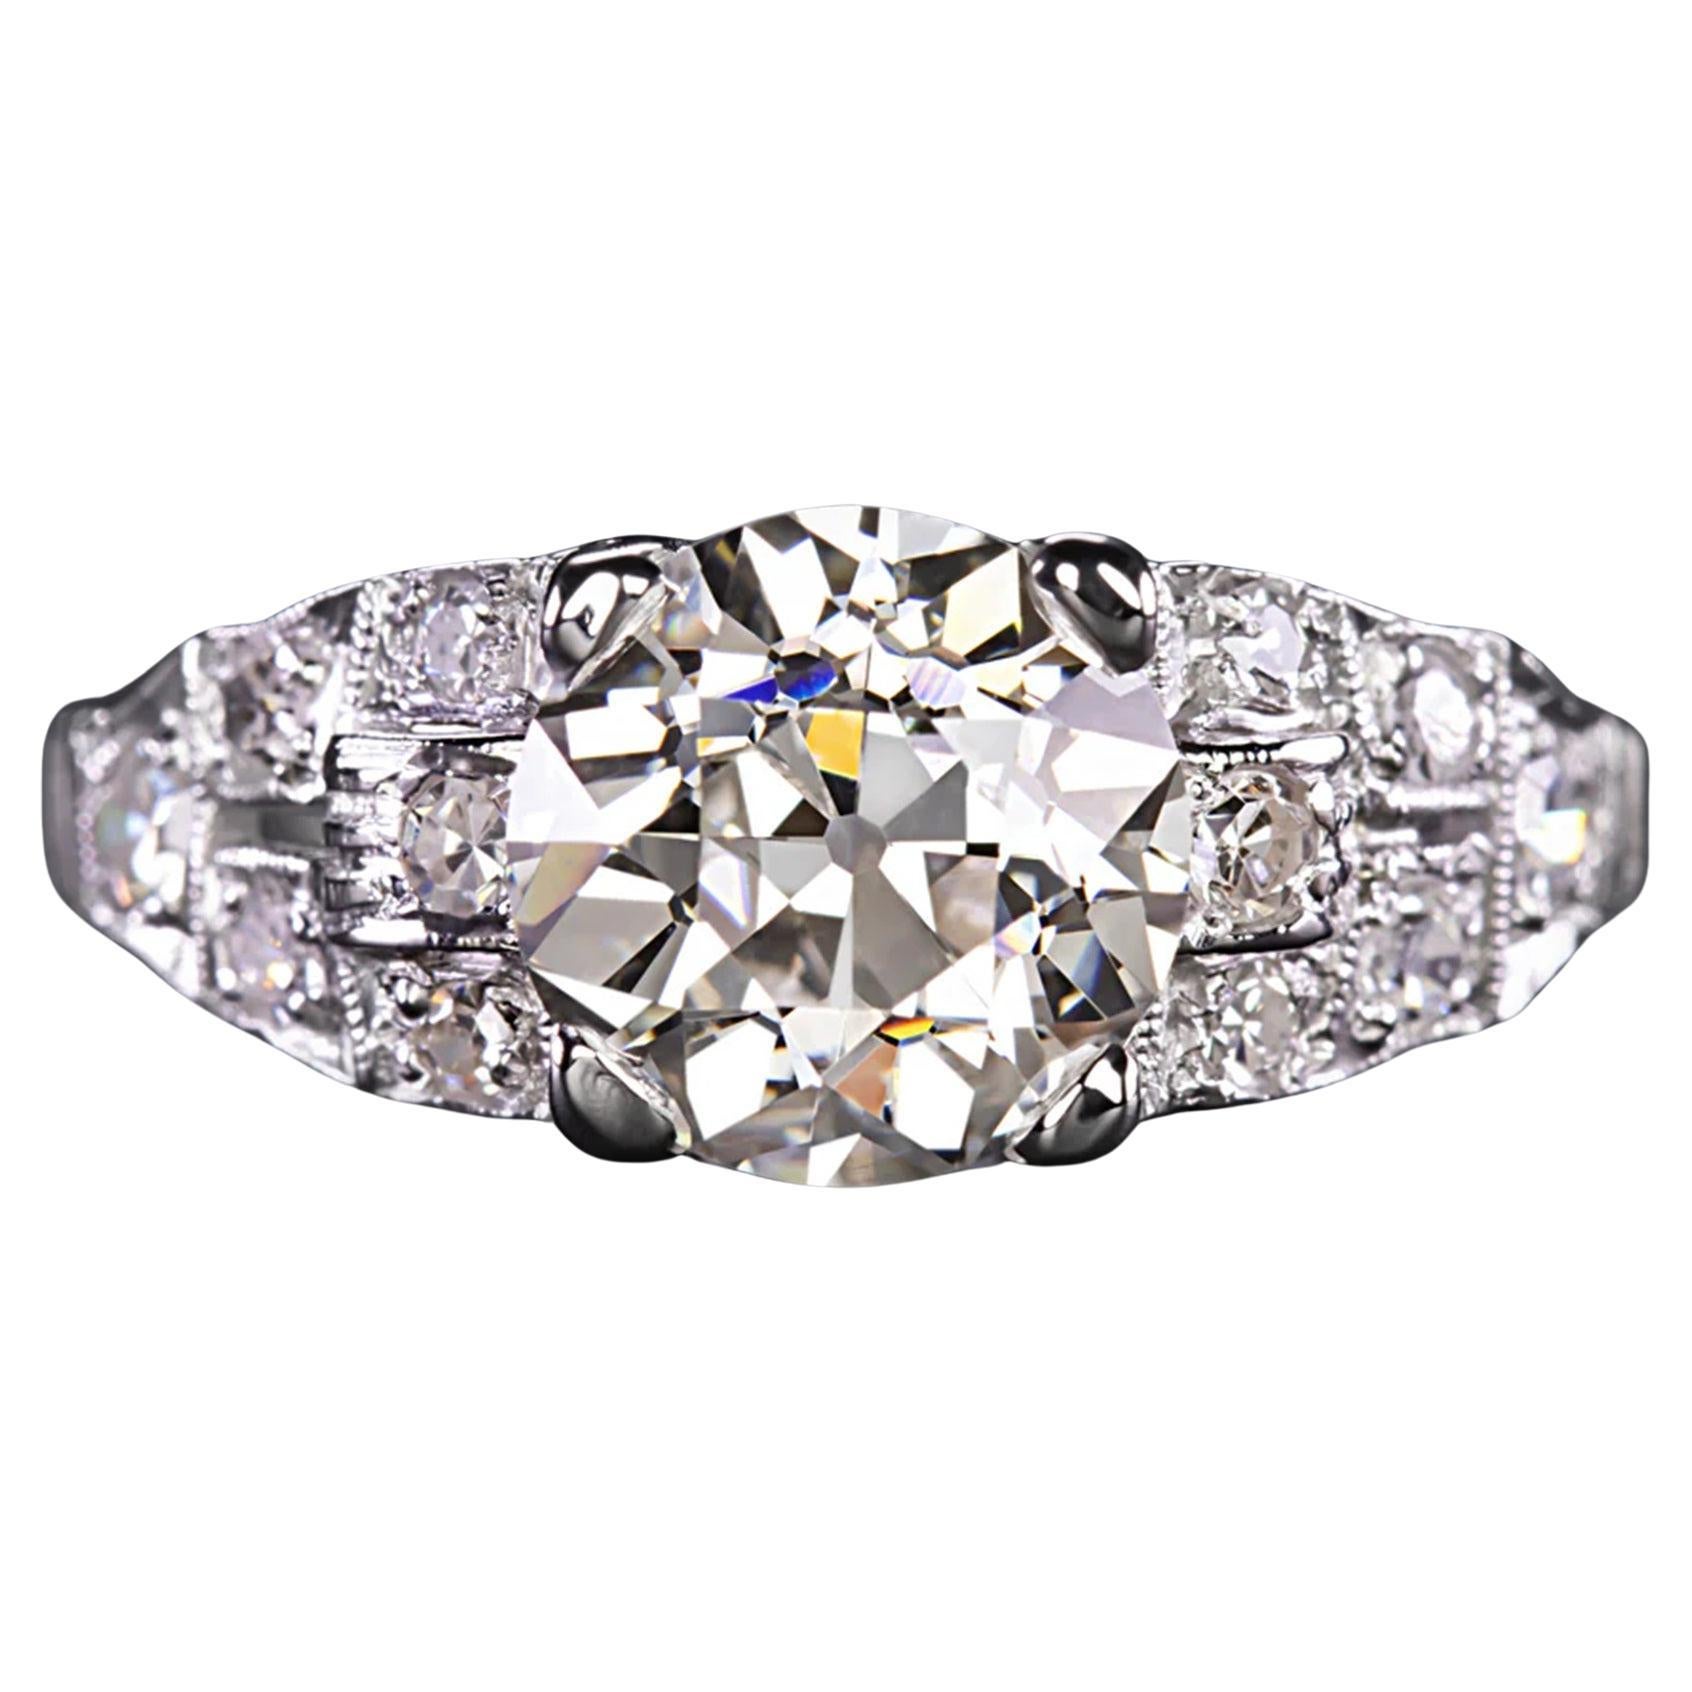  1920 European Cut Art Deco Vintage Diamond Cocktail Ring   For Sale